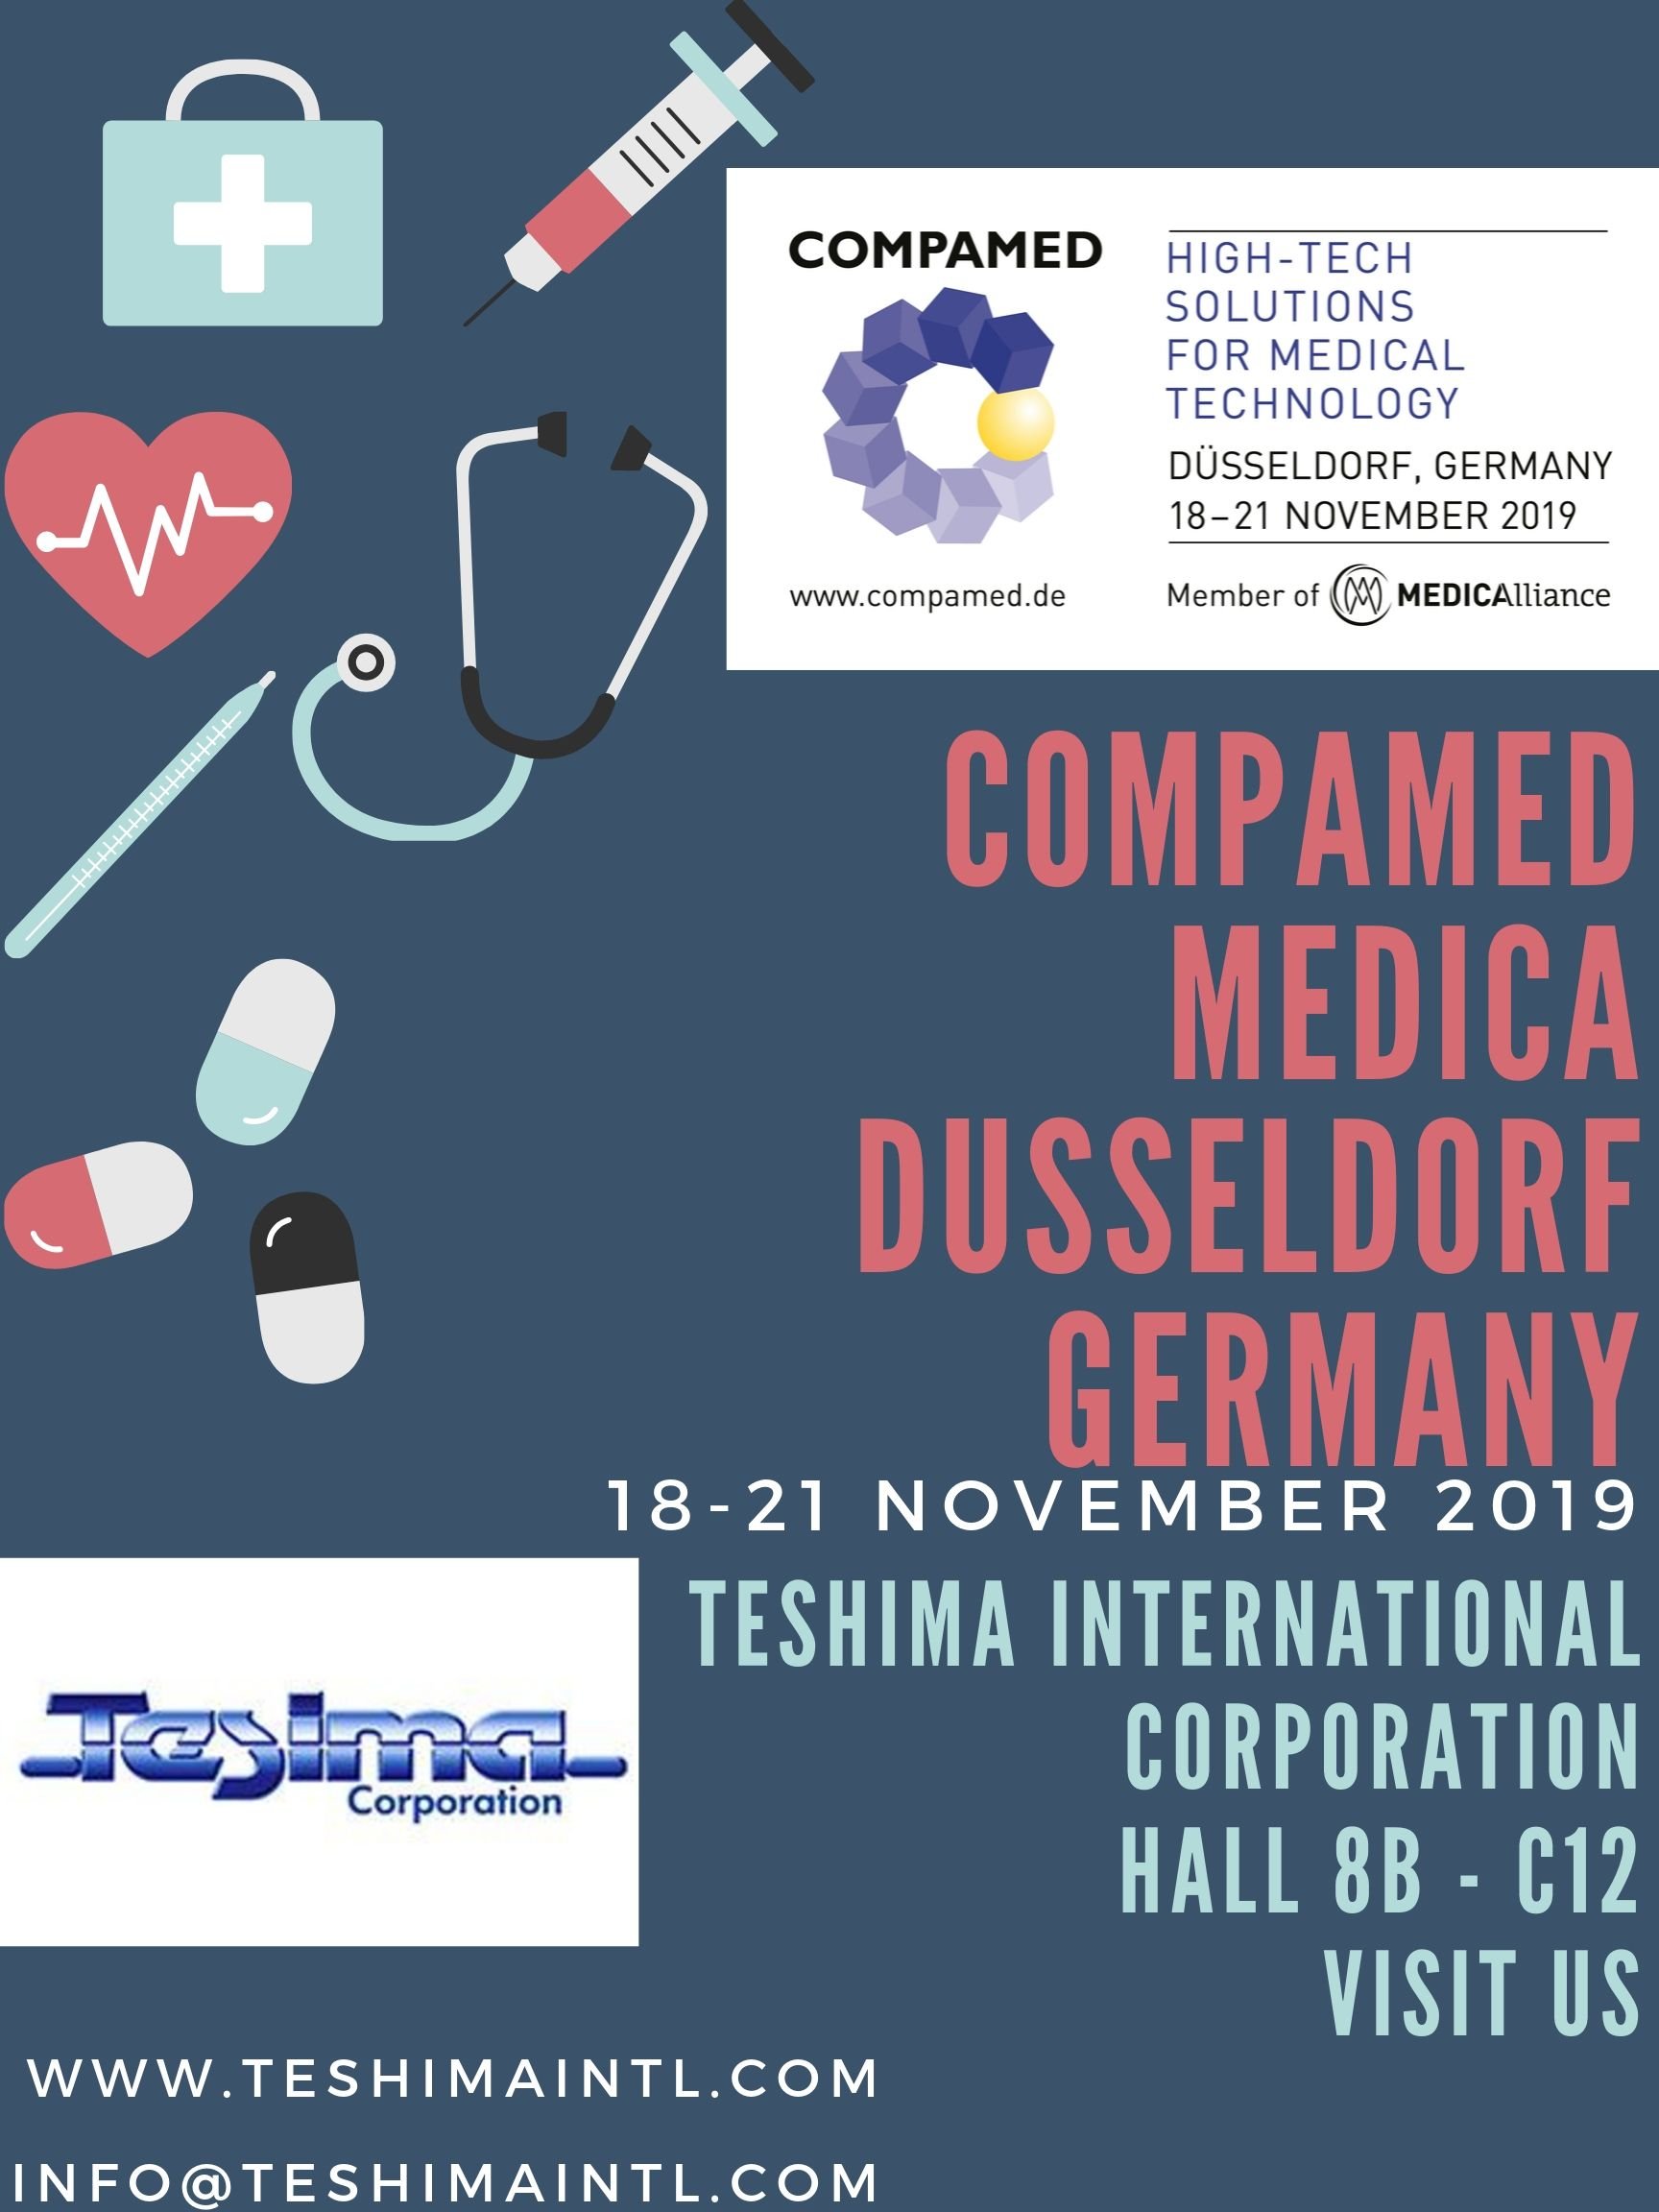 Compamed Medica Dusseldorf